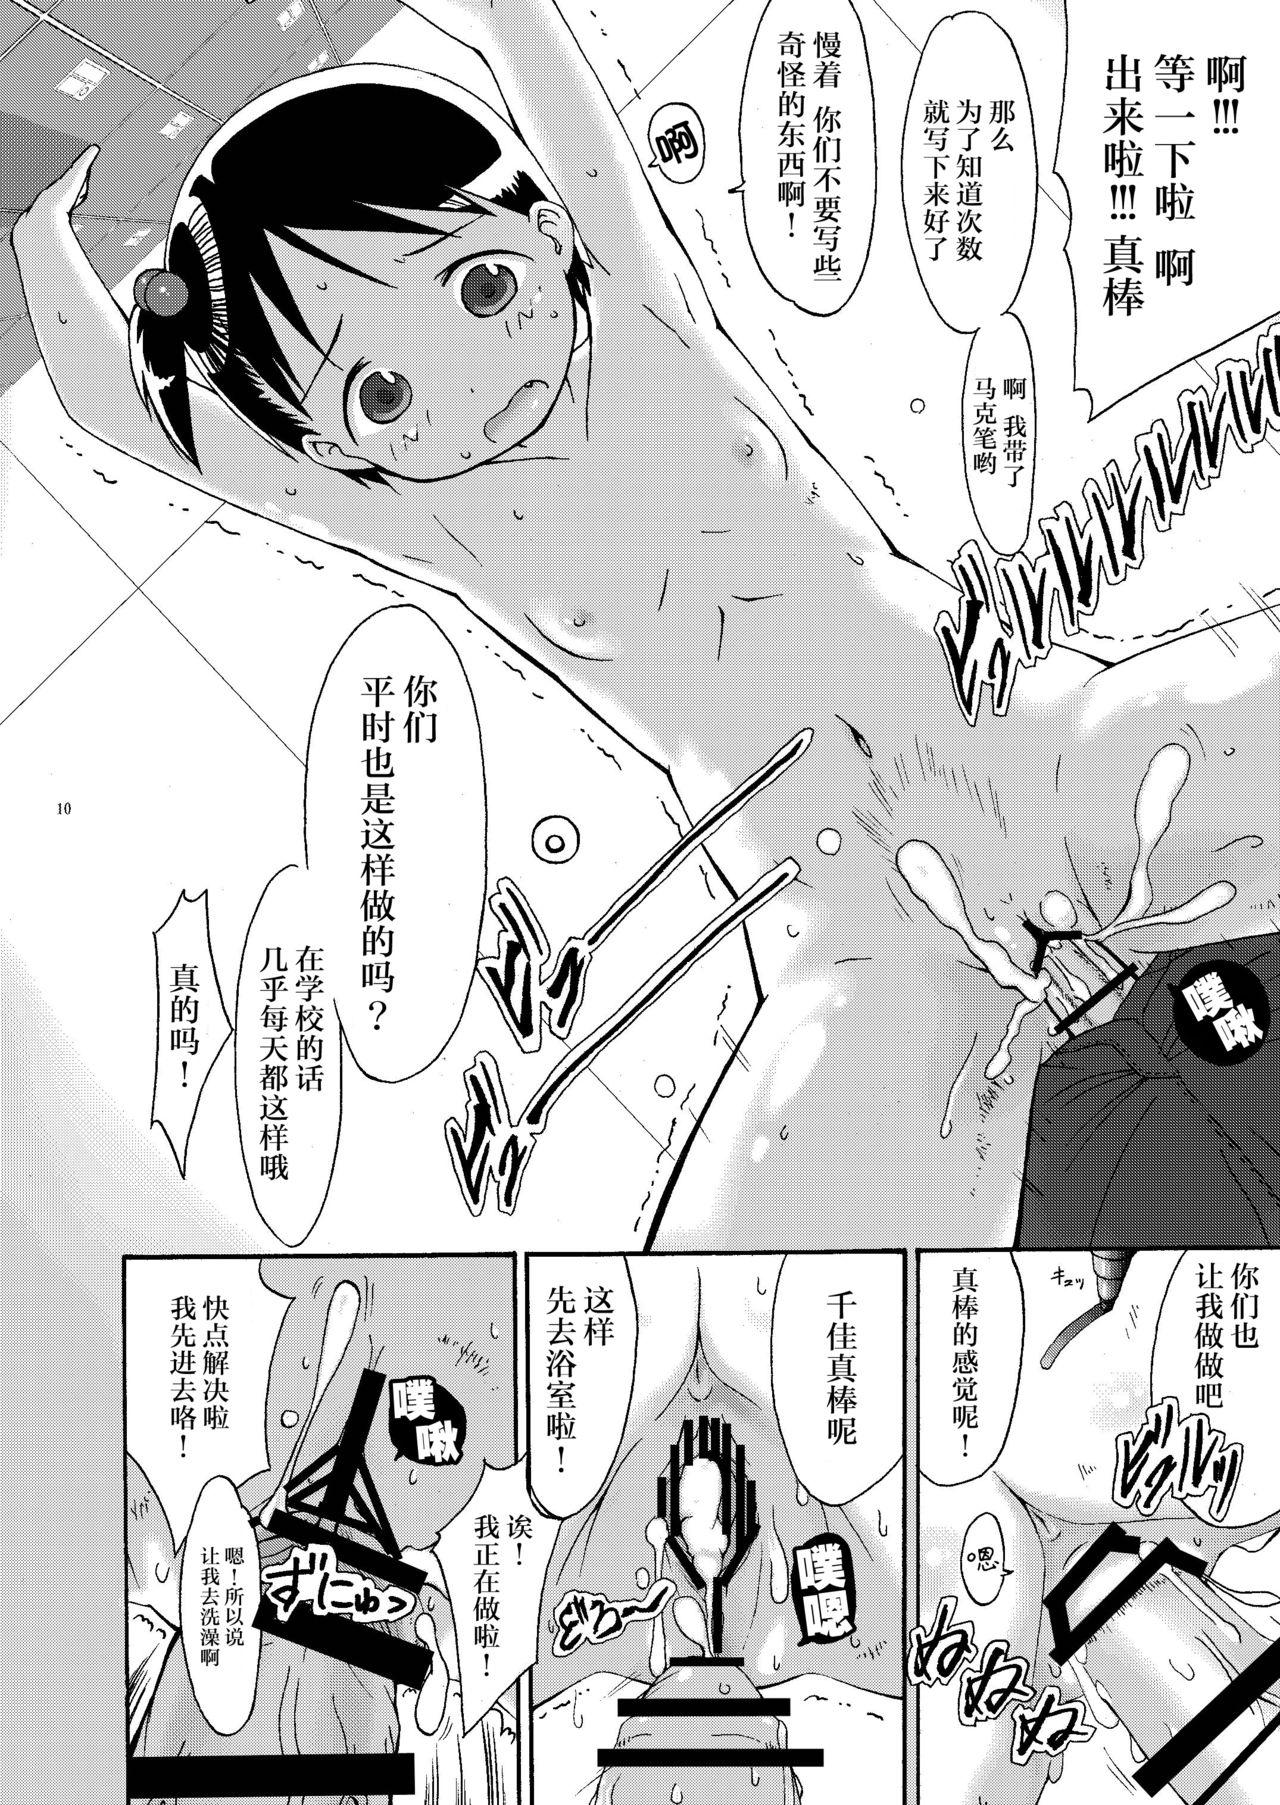 Titties mashimaro ism extra - Ichigo mashimaro Ex Gf - Page 11